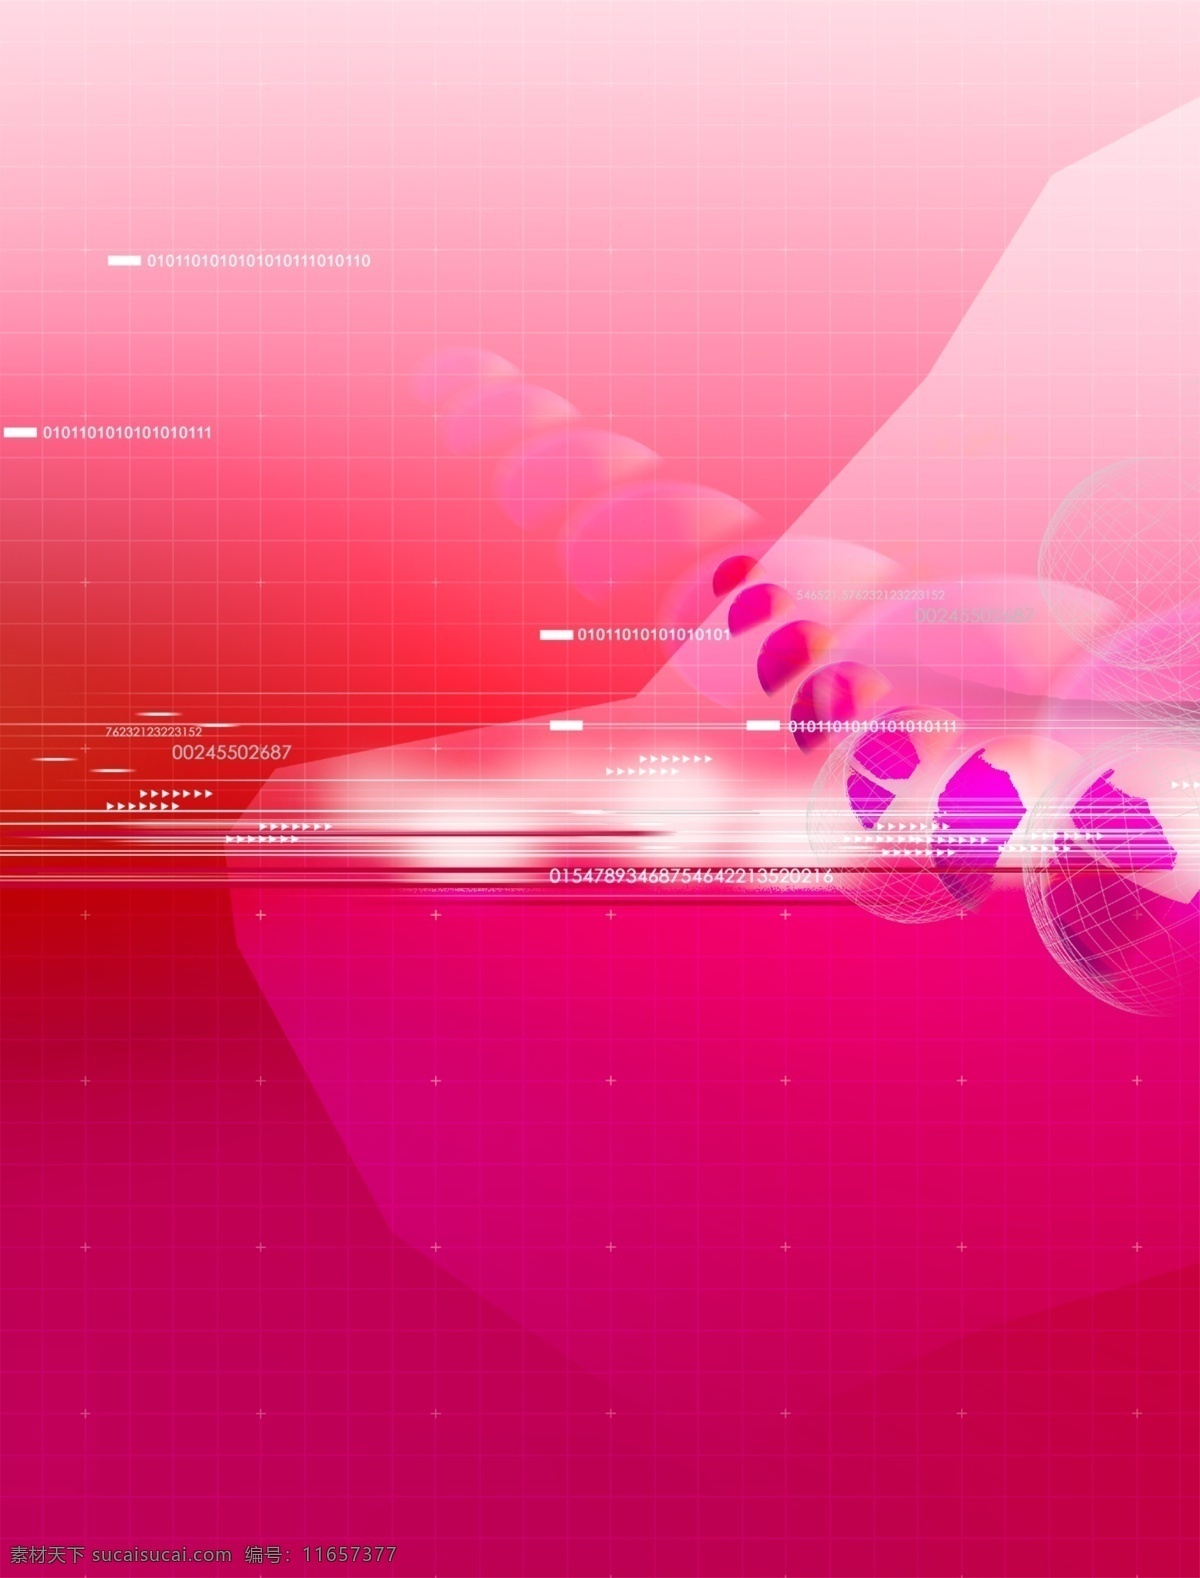 粉色 空间 数码 游戏背景 分层 3d 抽象 底纹 动感 后现代 科技 力量 梦幻 前卫 粉色空间 游戏背景设计 异度空间 速度 艺术 张力 原创设计 其他原创设计